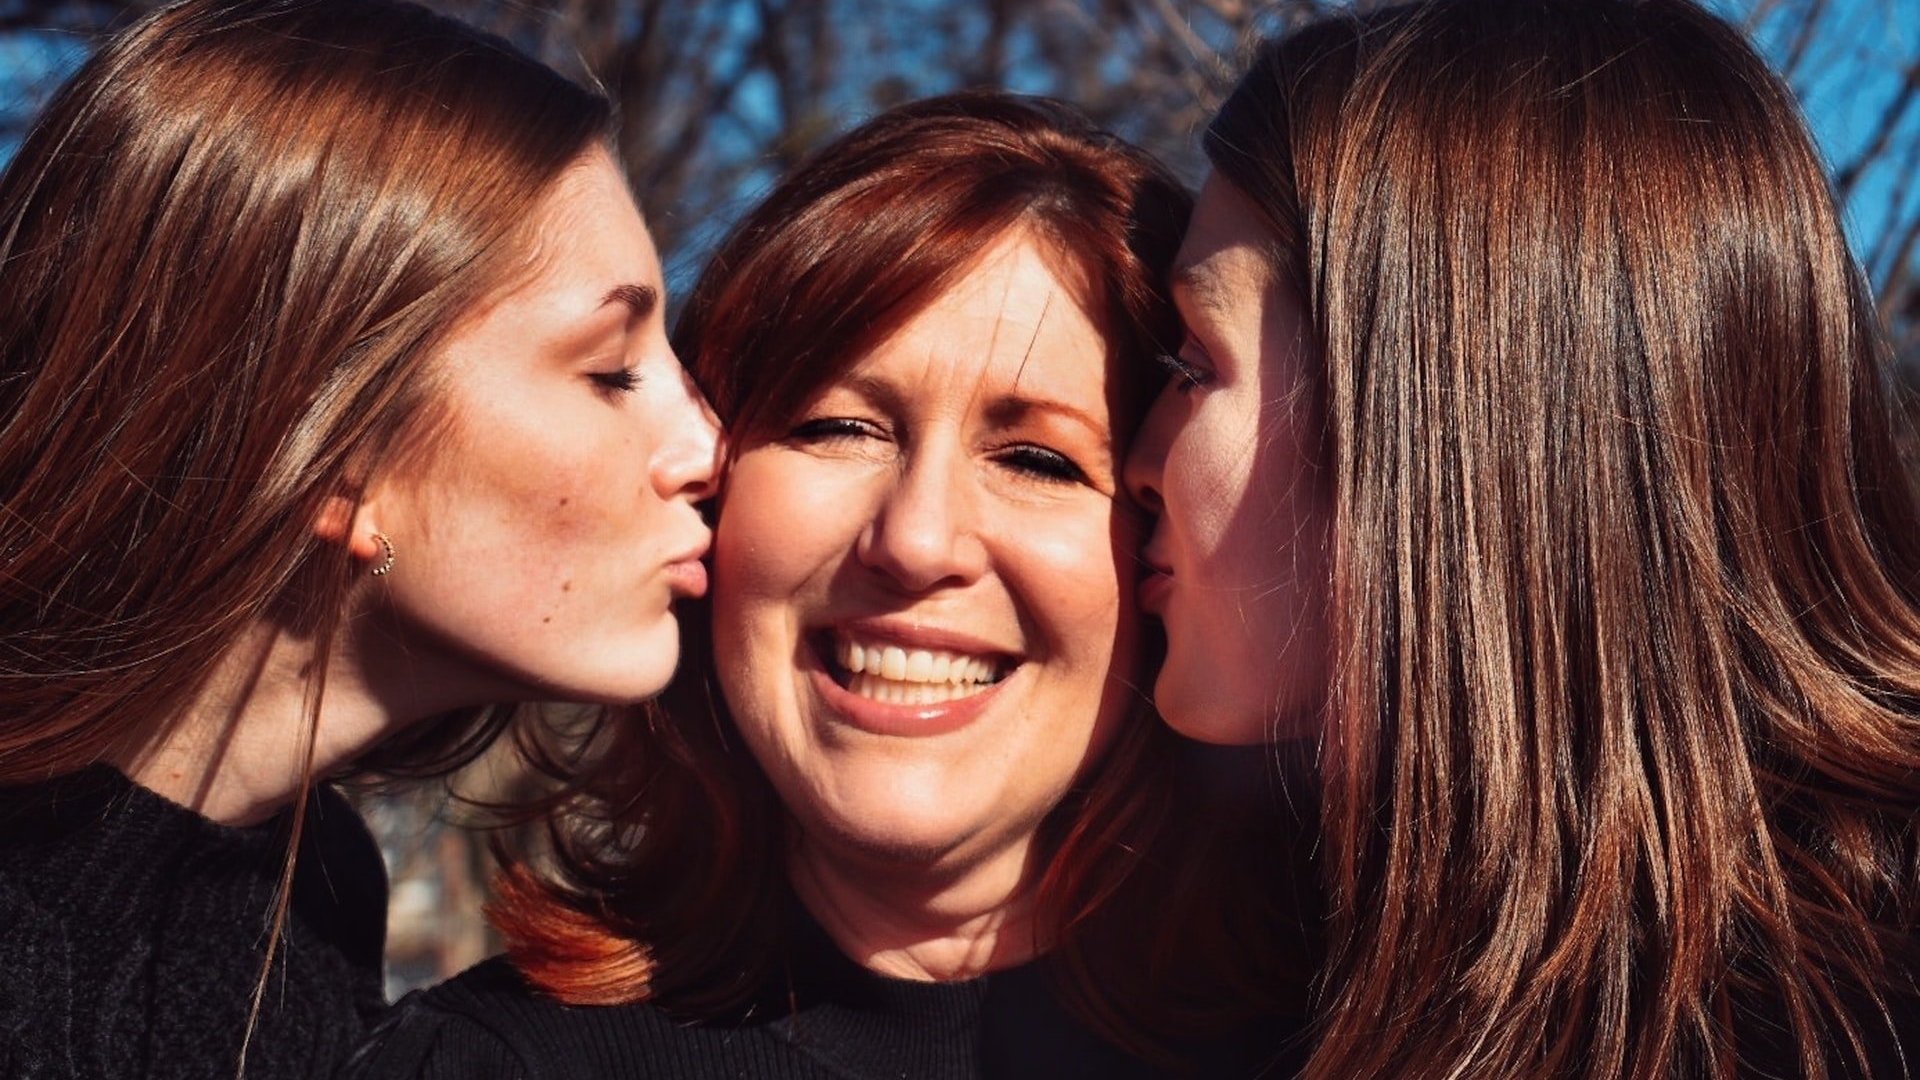 Uma mulher branca de cabelos castanhos sorrindo, ao centro. À esquerda, uma mulher dando-lhe um beijo no rosto, e à direita outra, fazendo a mesma coisa.